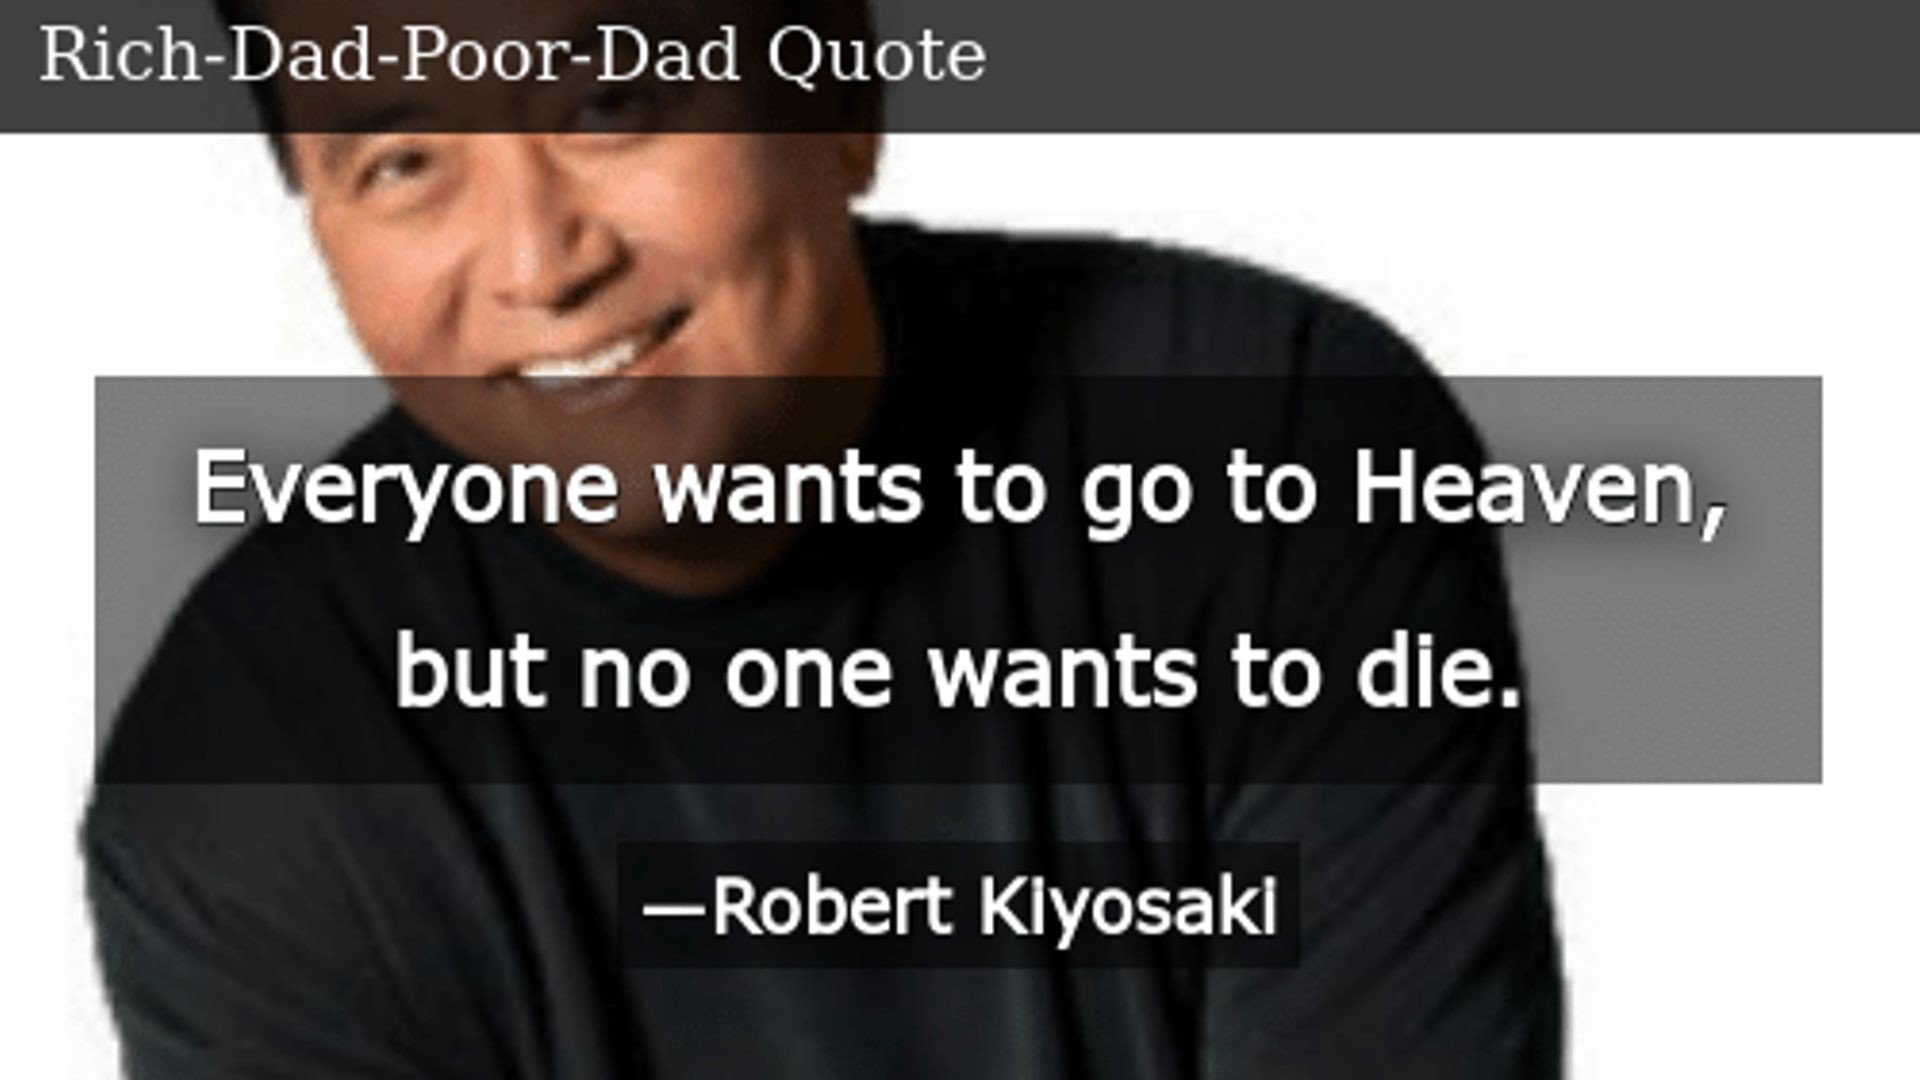 Rich Dad Poor Dad Quotes